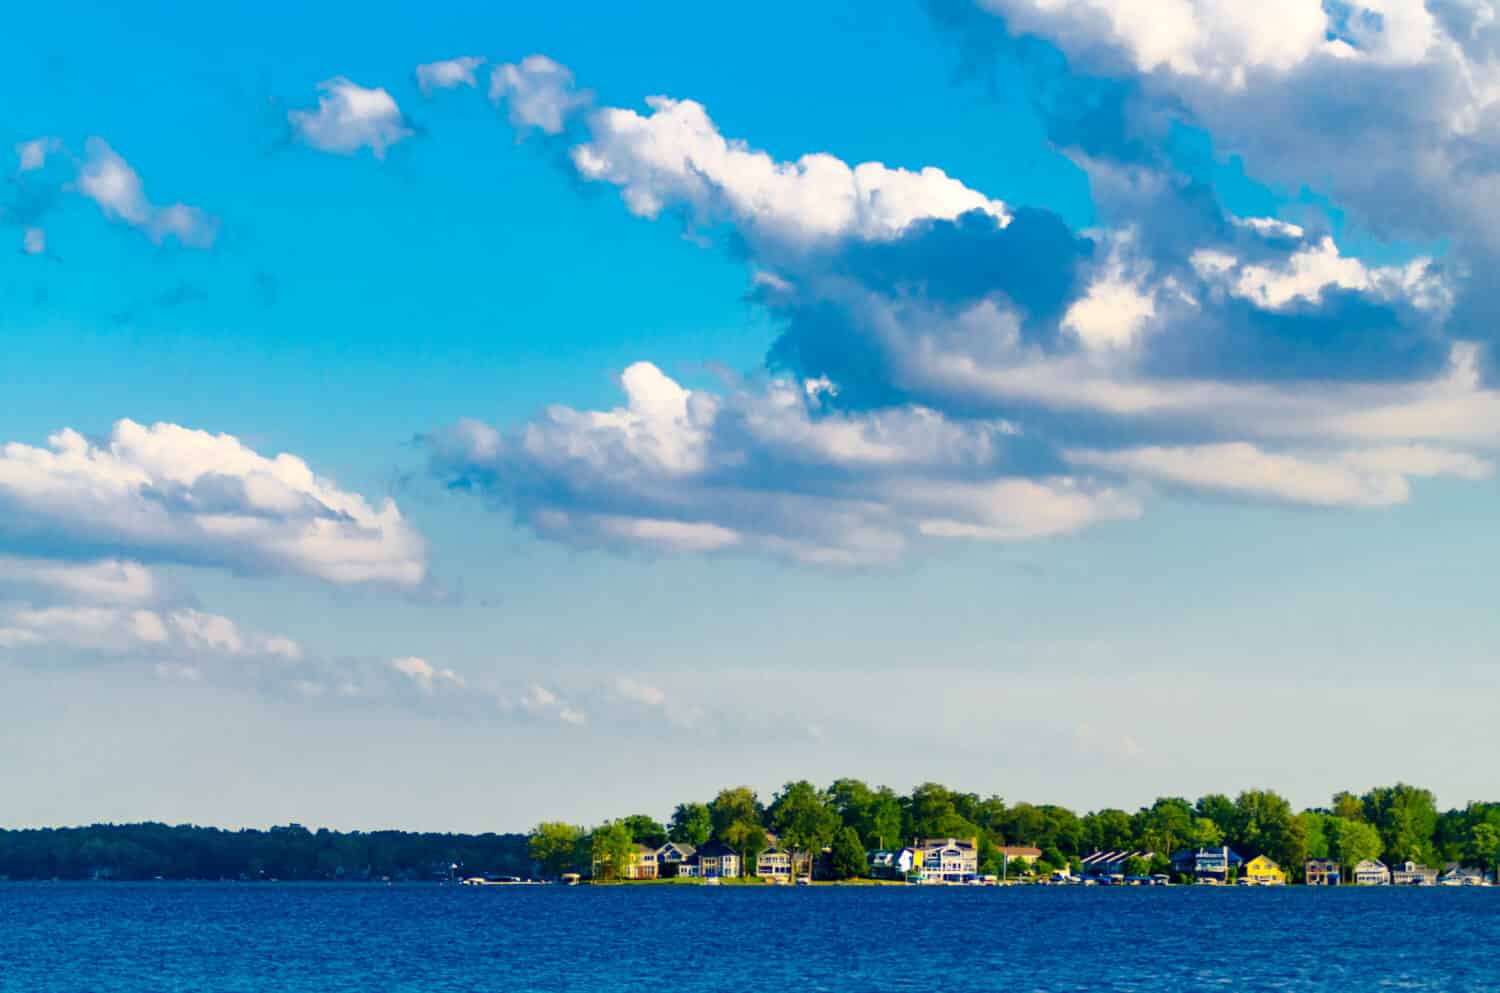 Le case per le vacanze fiancheggiano le rive del lago Maxinkuckee a Culver, nell'Indiana, mentre le nuvole bianche si stagliano contro un cielo blu